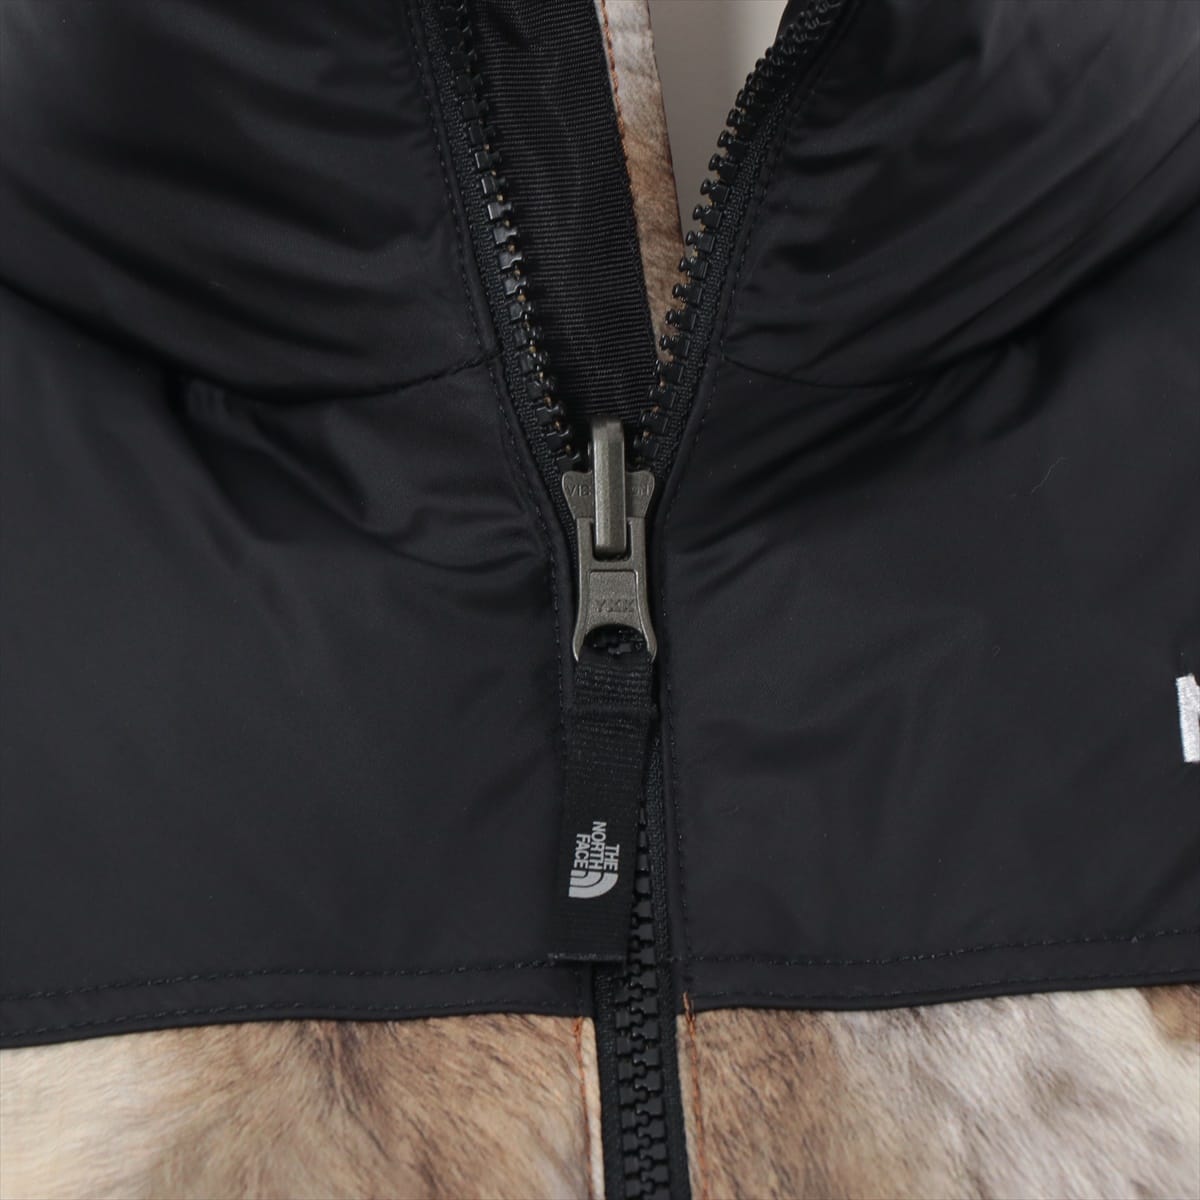 シュプリーム×ノースフェイス ナイロン ダウンベスト M メンズ カーキ 13AW Fur Print Nuptse Vest ND01341